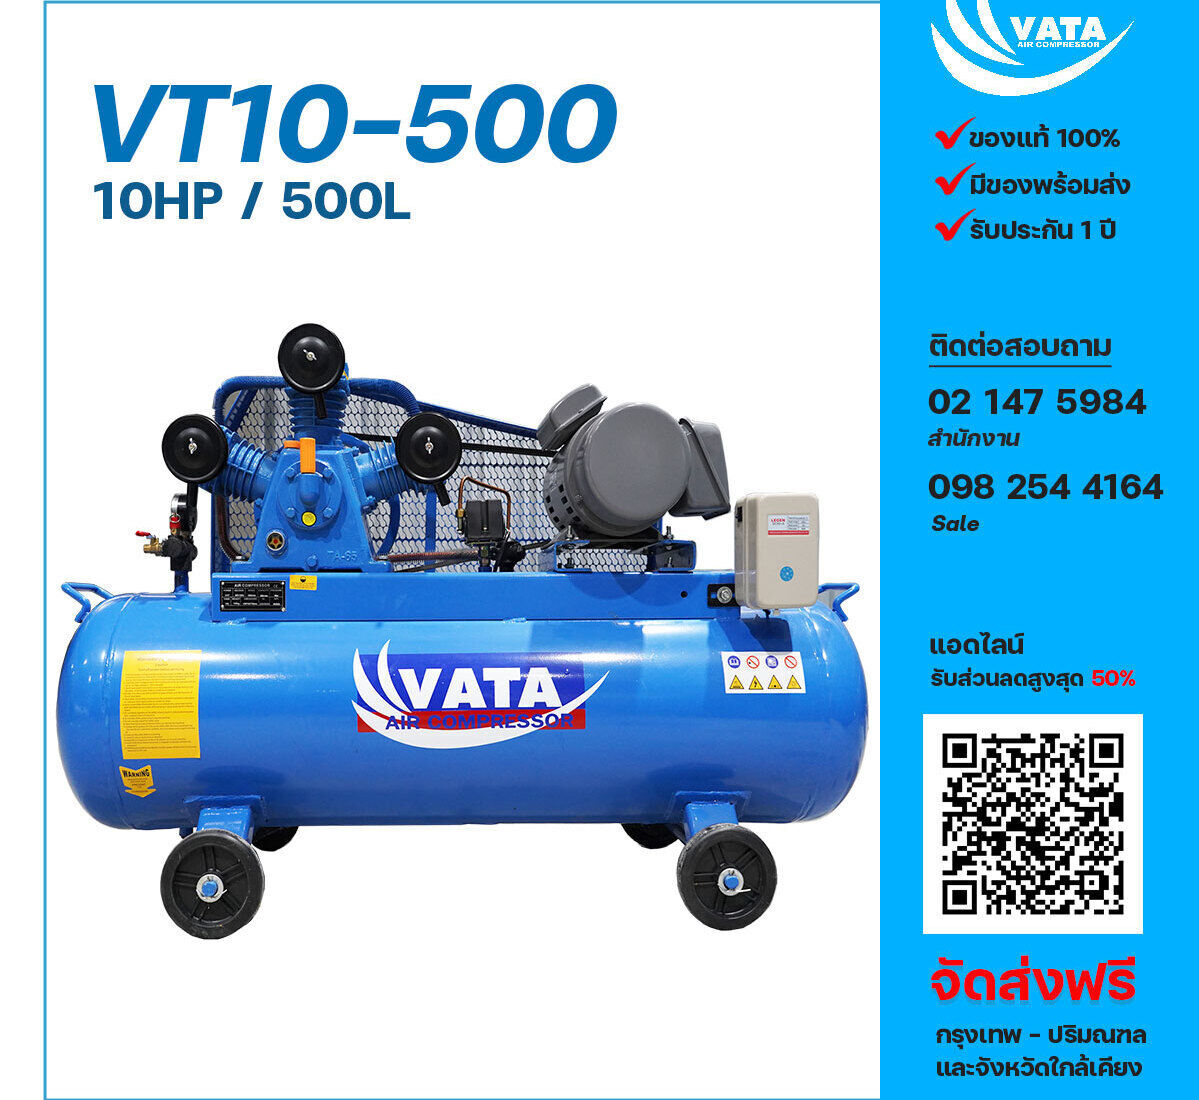 ปั๊มลมวาตะ VATA VT10-500 380V ปั๊มลมลูกสูบ ขนาด 3 สูบ 10 แรงม้า 500 ลิตร VATA พร้อมมอเตอร์ ไฟ 380V ส่งฟรี กรุงเทพฯ-ปริมณฑล รับประกัน 1 ปี